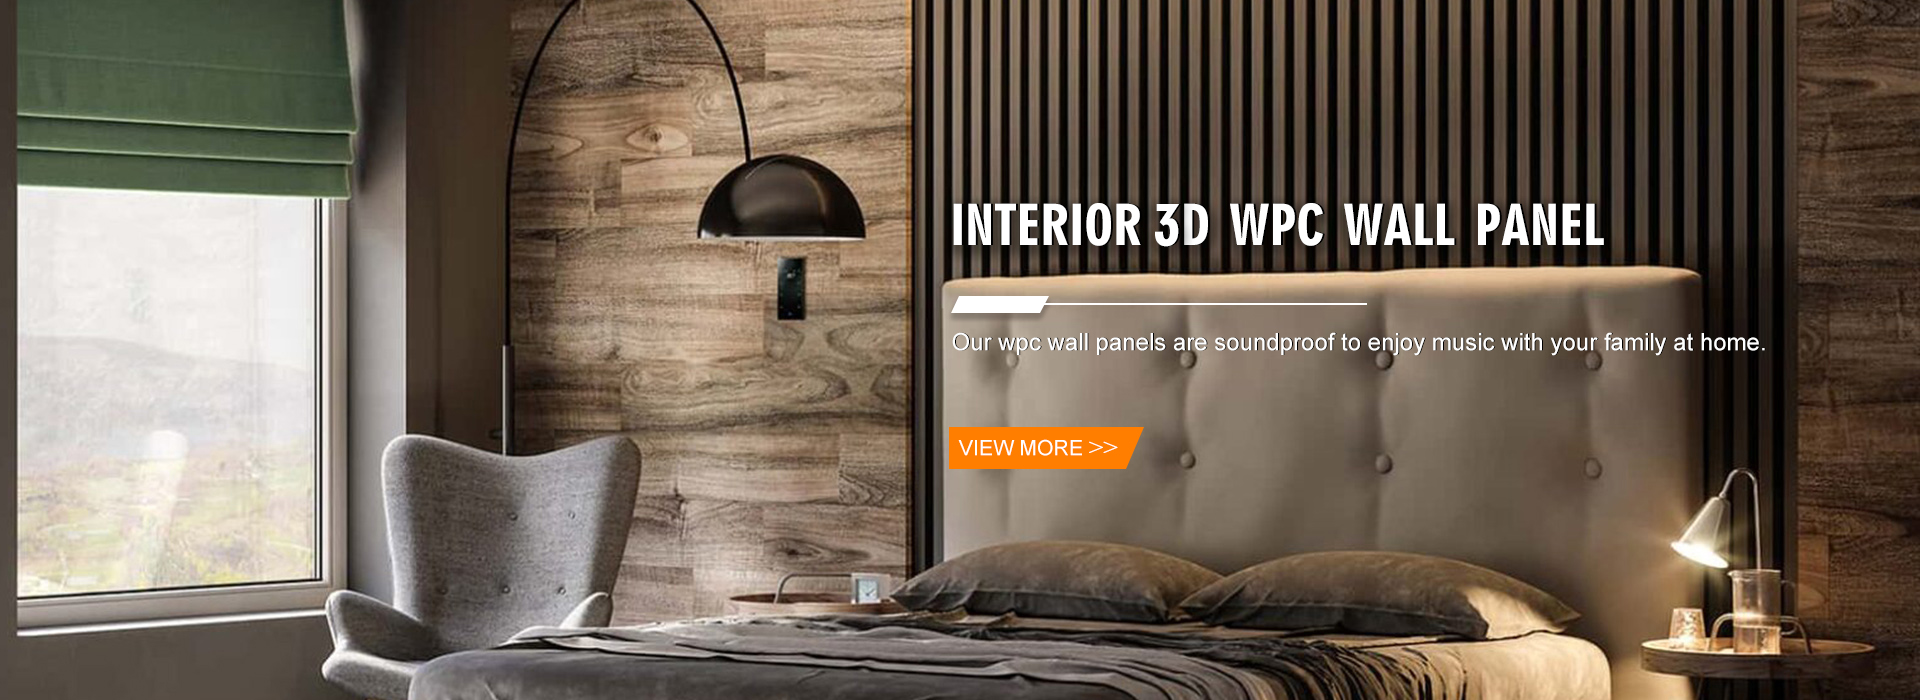 Painel de parede interior 3D WPC